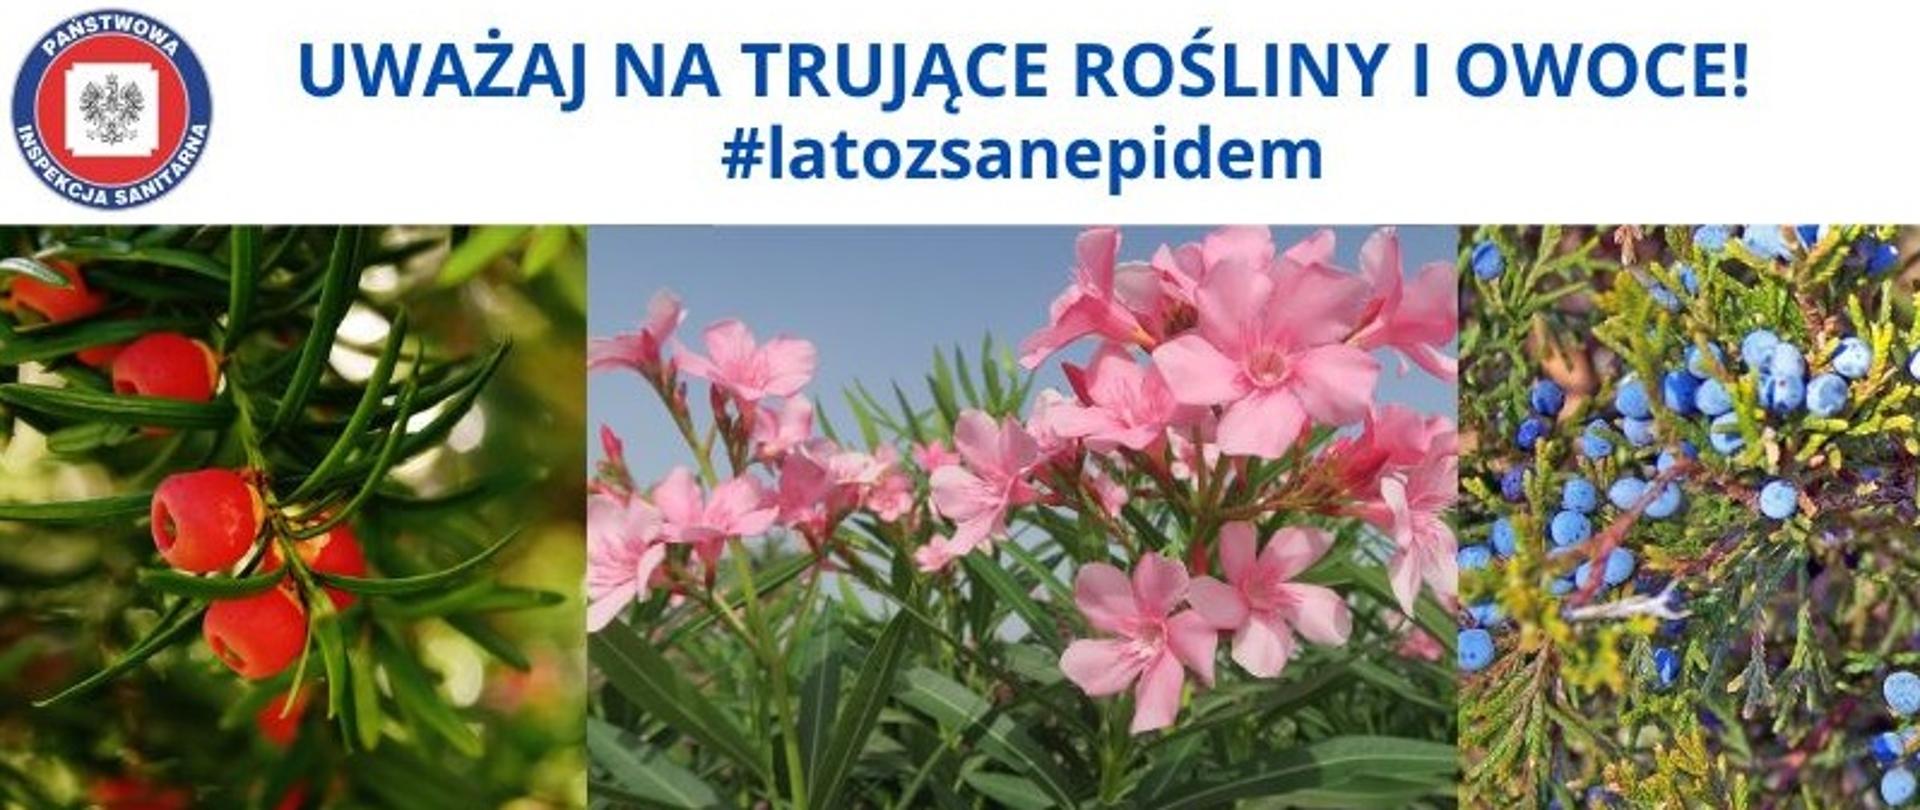 Na zdjęciu widać cis, oleander oraz jałowiec sabisyński. Logo Państwowej Inspekcji Sanitarnej oraz napis: Uważaj na trujące rośliny i owoce. #Latozsanepidem